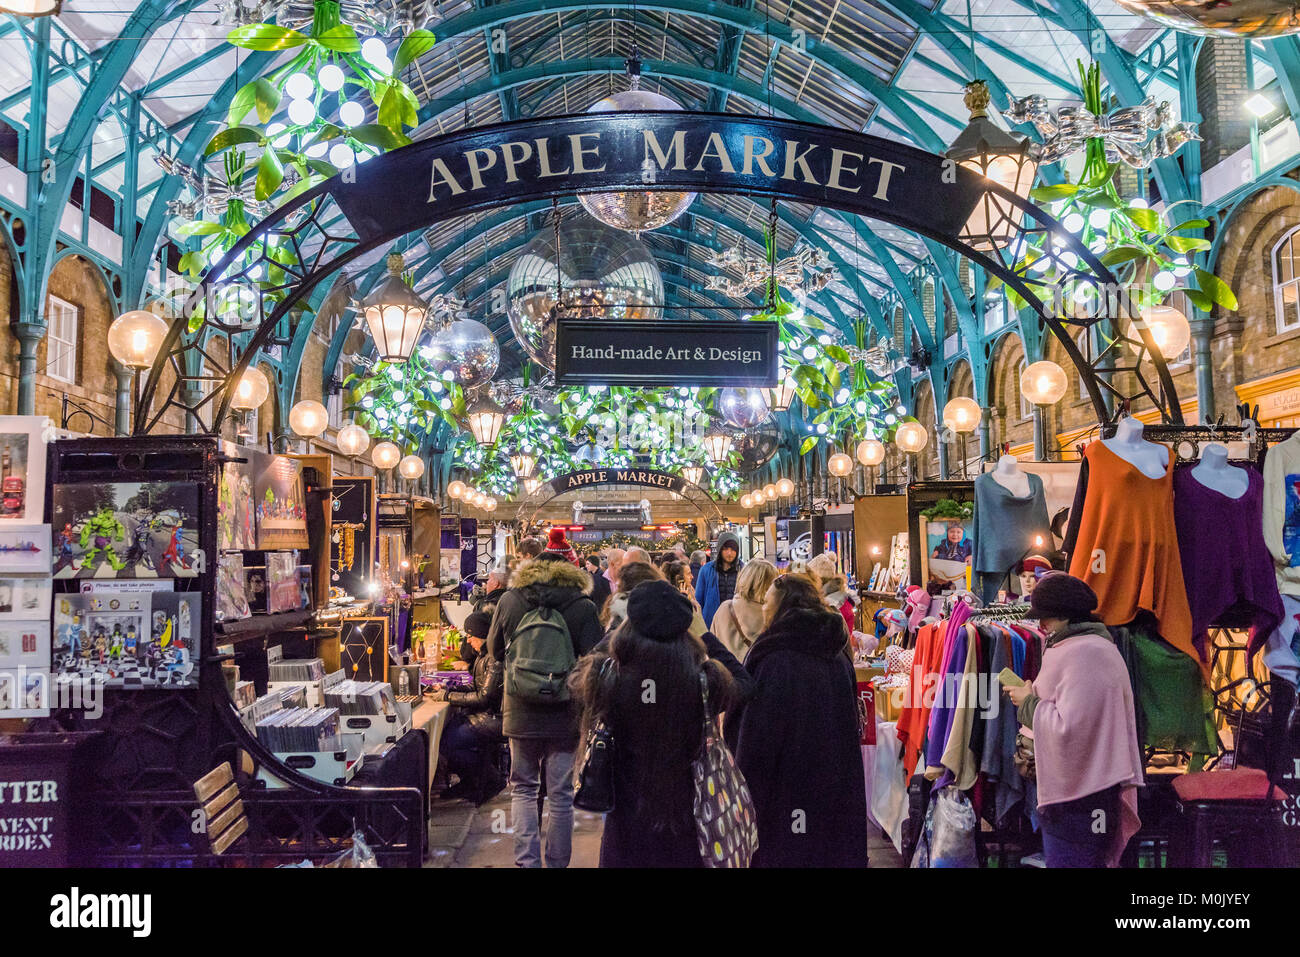 LONDON, Regno Unito - 06 dicembre: Questo è il mercato delle mele che è un mercato popolare di arte e oggetti di design in Covent Garden area su dicembre 06, 20 Foto Stock